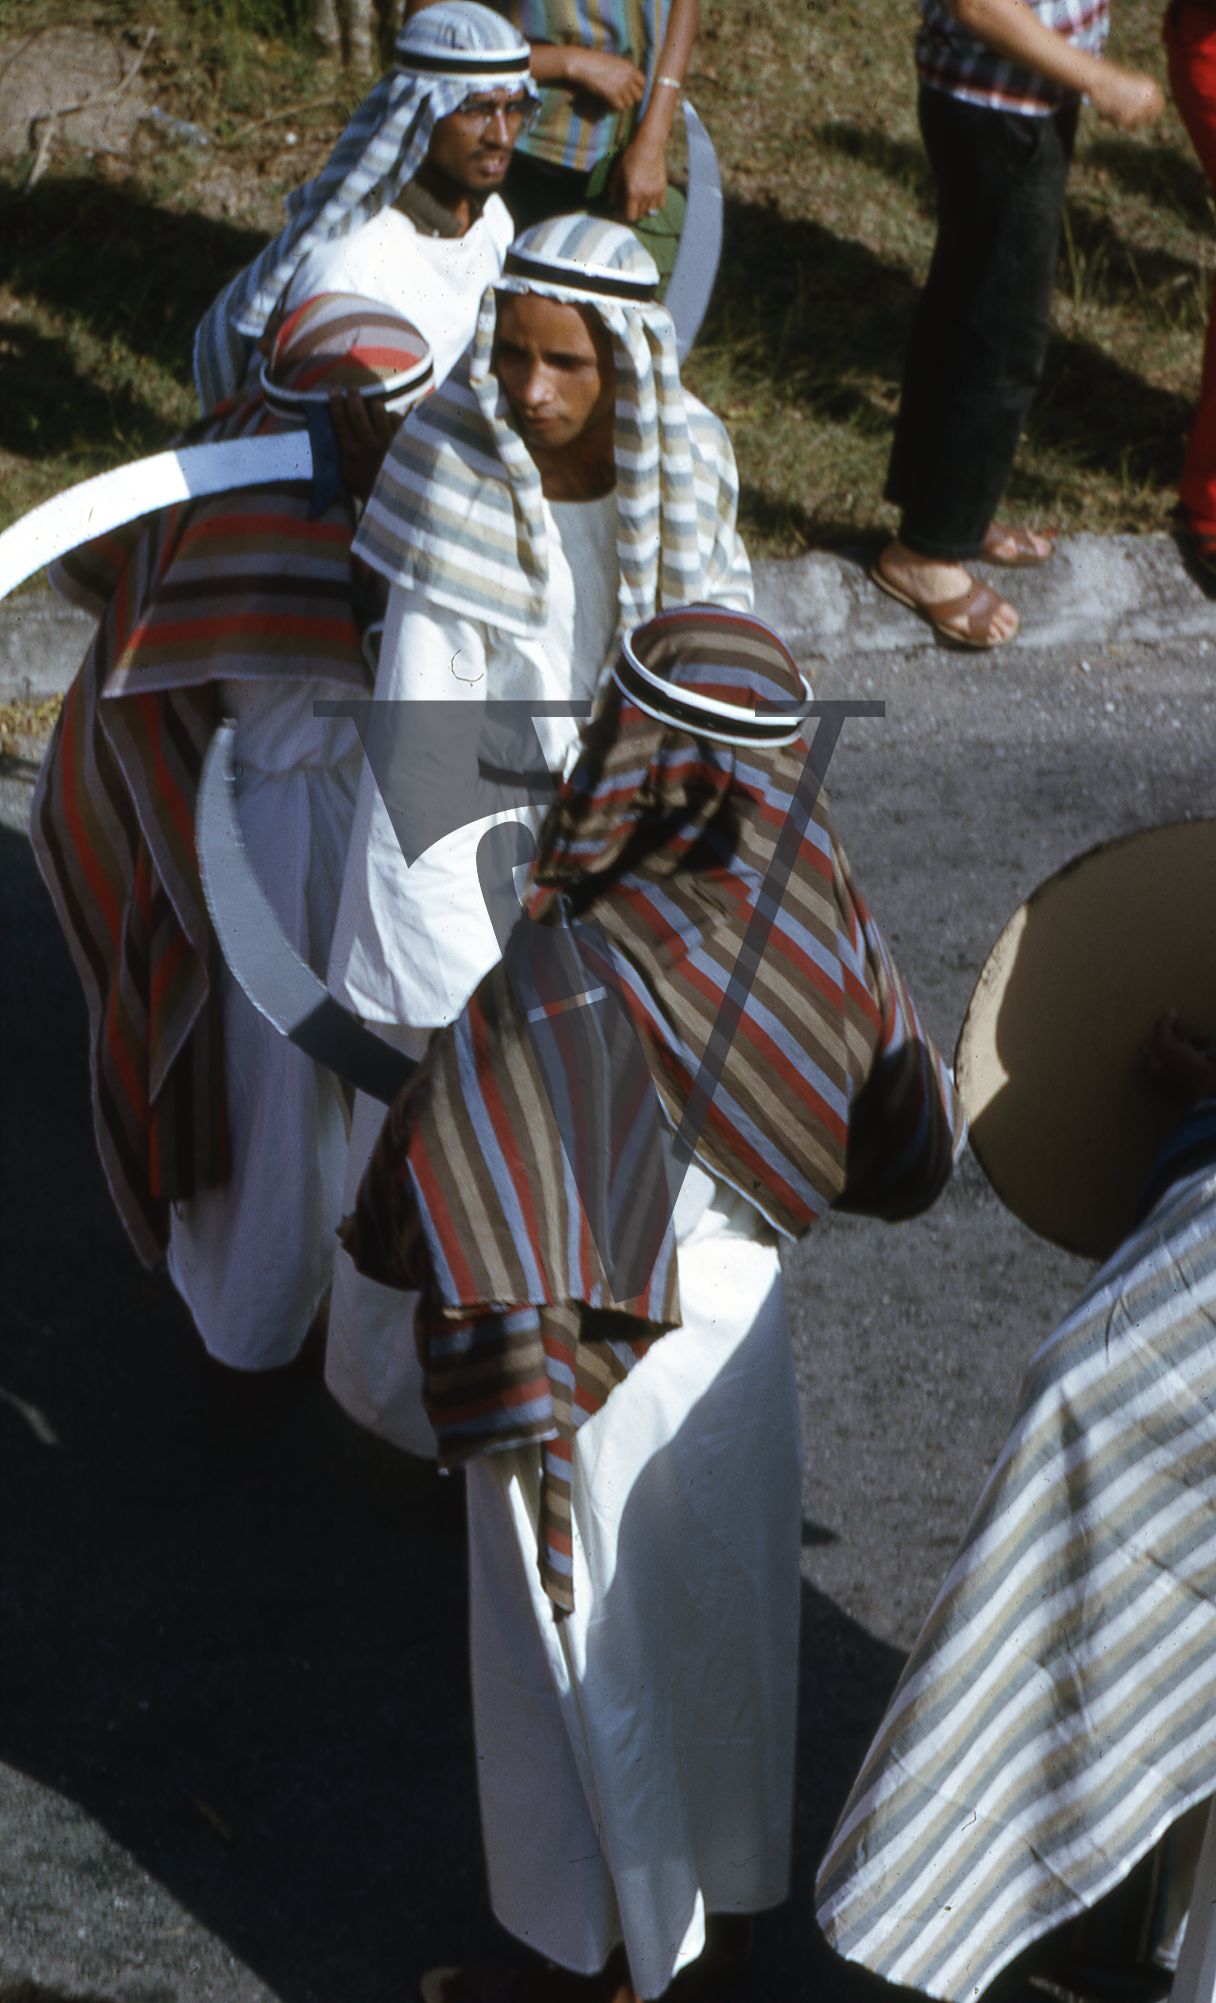 Jamaica, Men in head-dress at carnival.